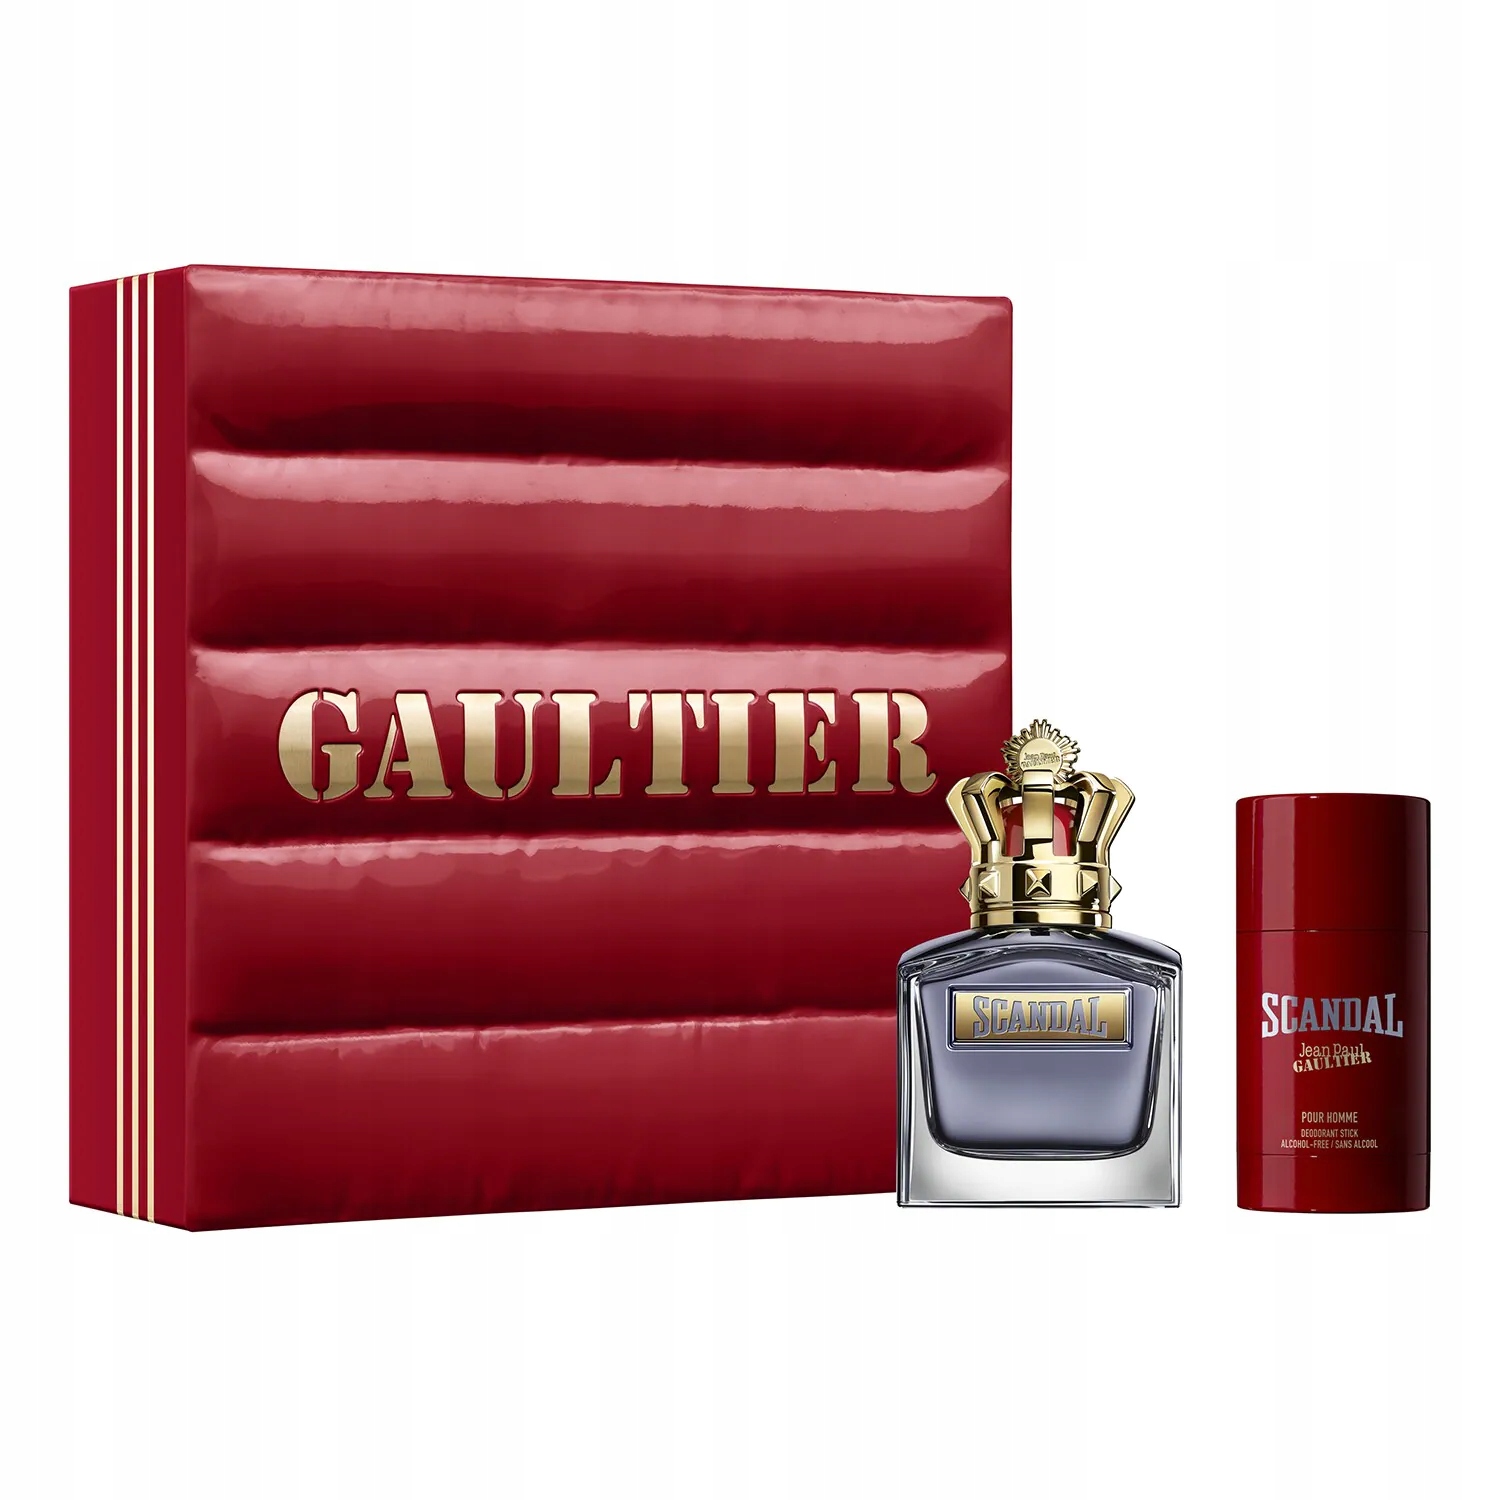 Scandal pour homme. Jean Paul Gaultier scandal pour homme 100 мл. Jean Paul Gaultier scandal pour homme. Jean Paul Gaultier scandal le Parfum her.